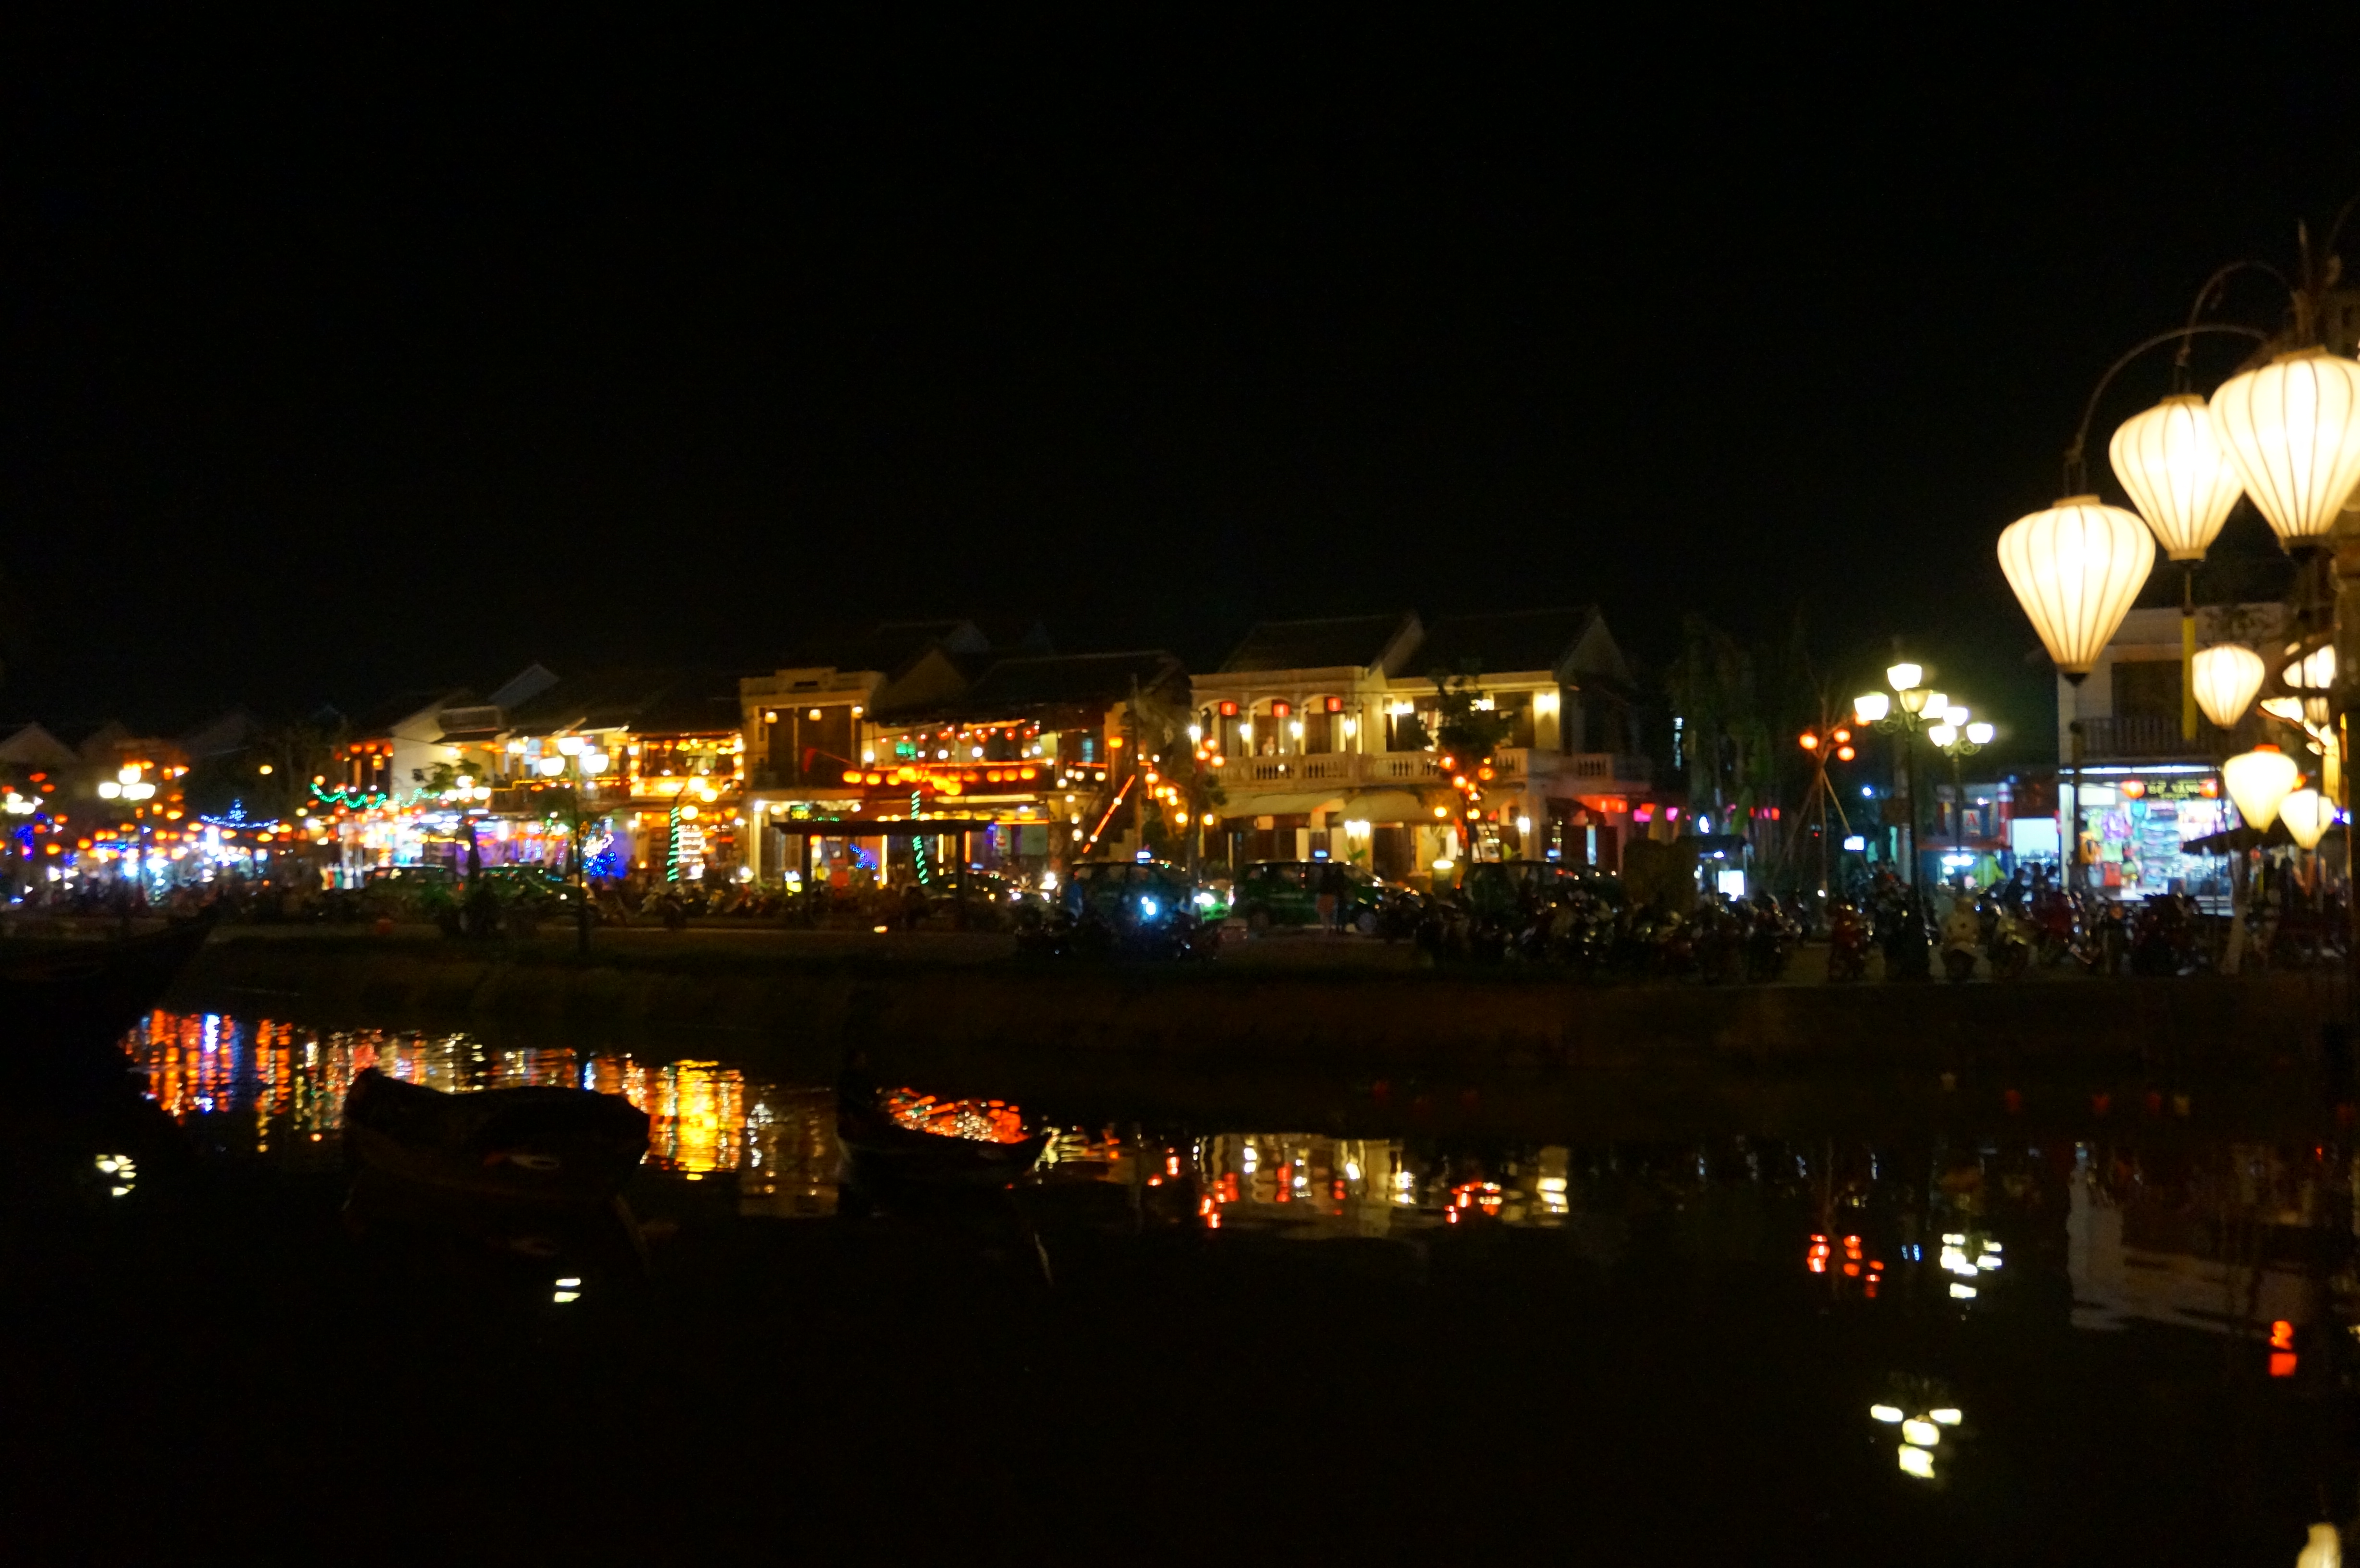 越南游之二-古老的河内,秀丽的下龙湾,悠闲的岘港,厚重的顺化,彩色的